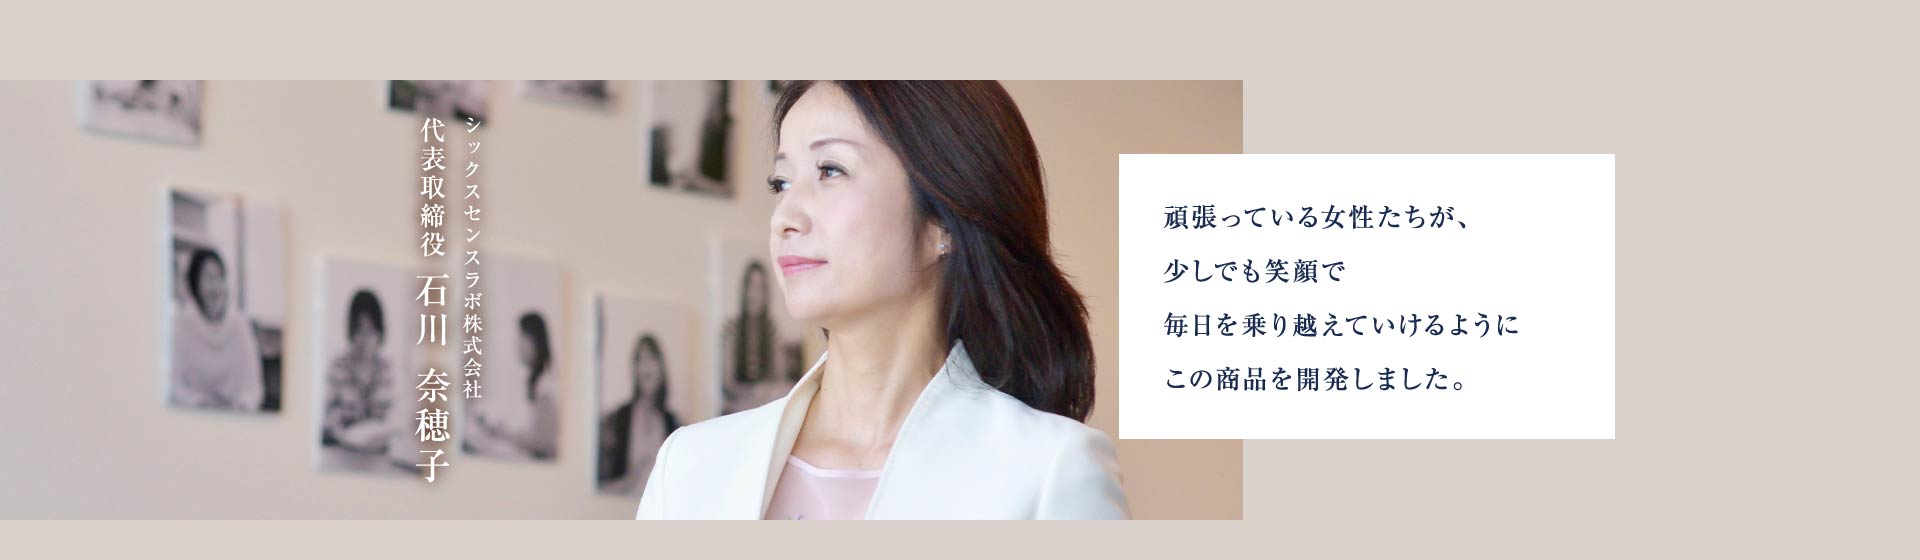 シックスセンスラボ株式会社 代表取締役 石川奈穂子 頑張っている女性たちが、少しでも笑顔で毎日を乗り越えていけるようにこの商品を開発しました。